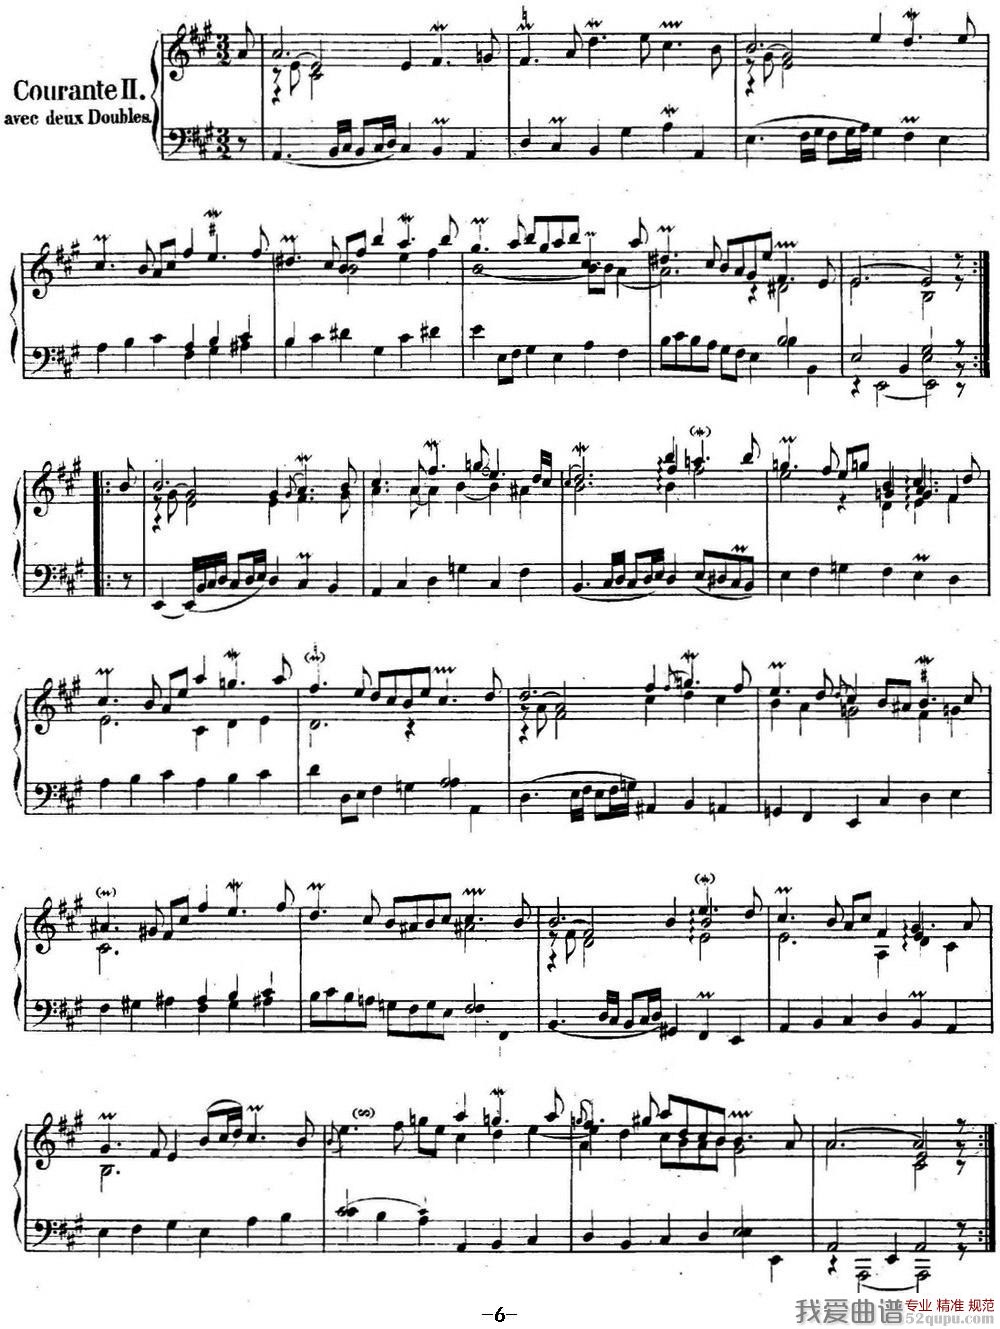 ӢNo.1 ͺ A 1st Suite BWV 806